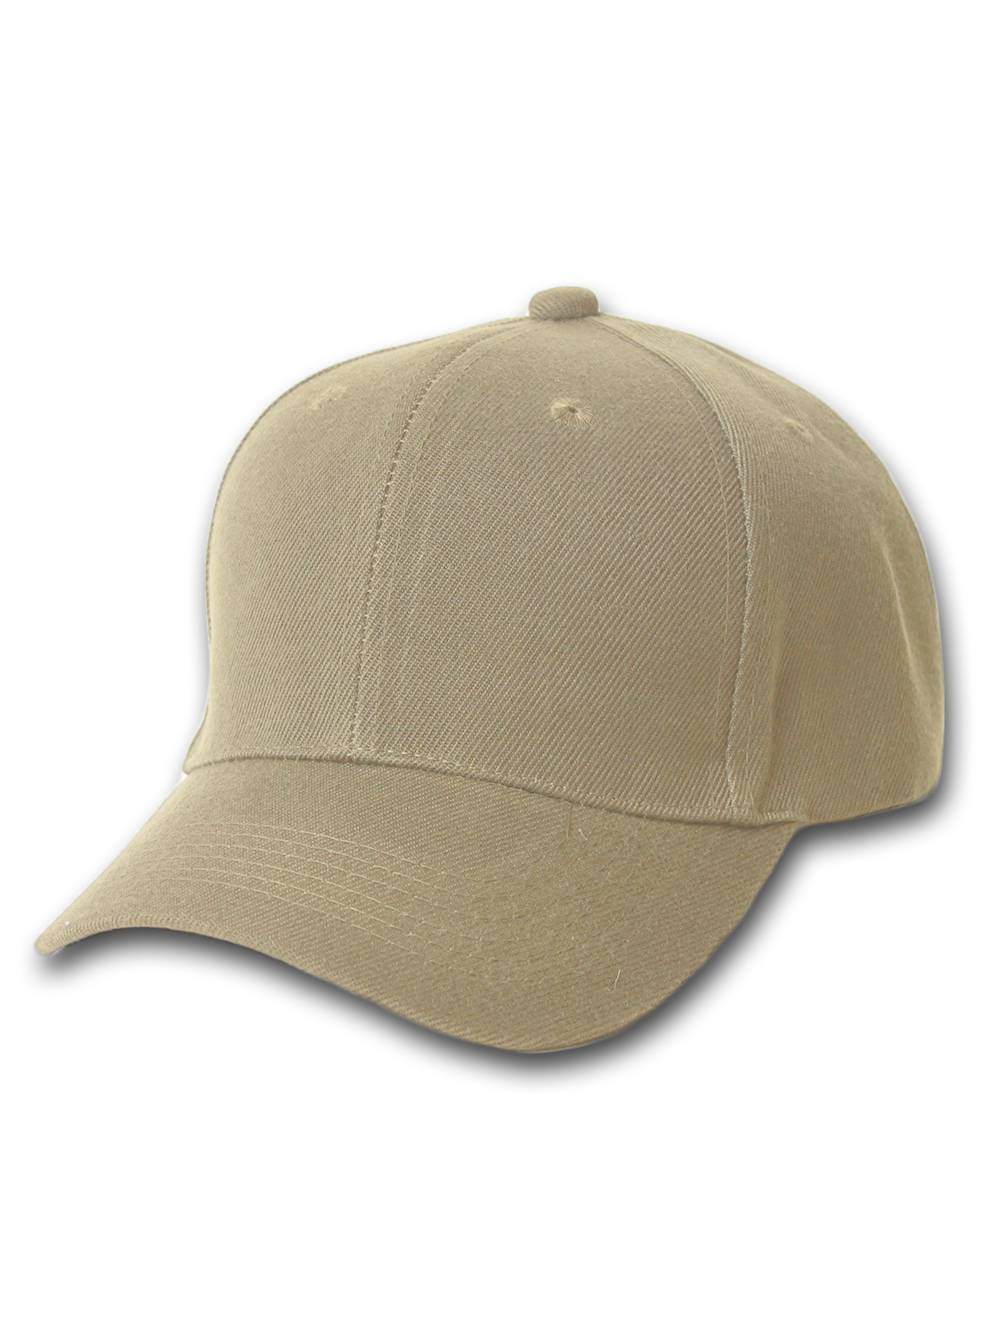 CafePress Aspen Vibrant Cap Baseball Cap with Adjustable Closure Unique Printed Baseball Hat Khaki